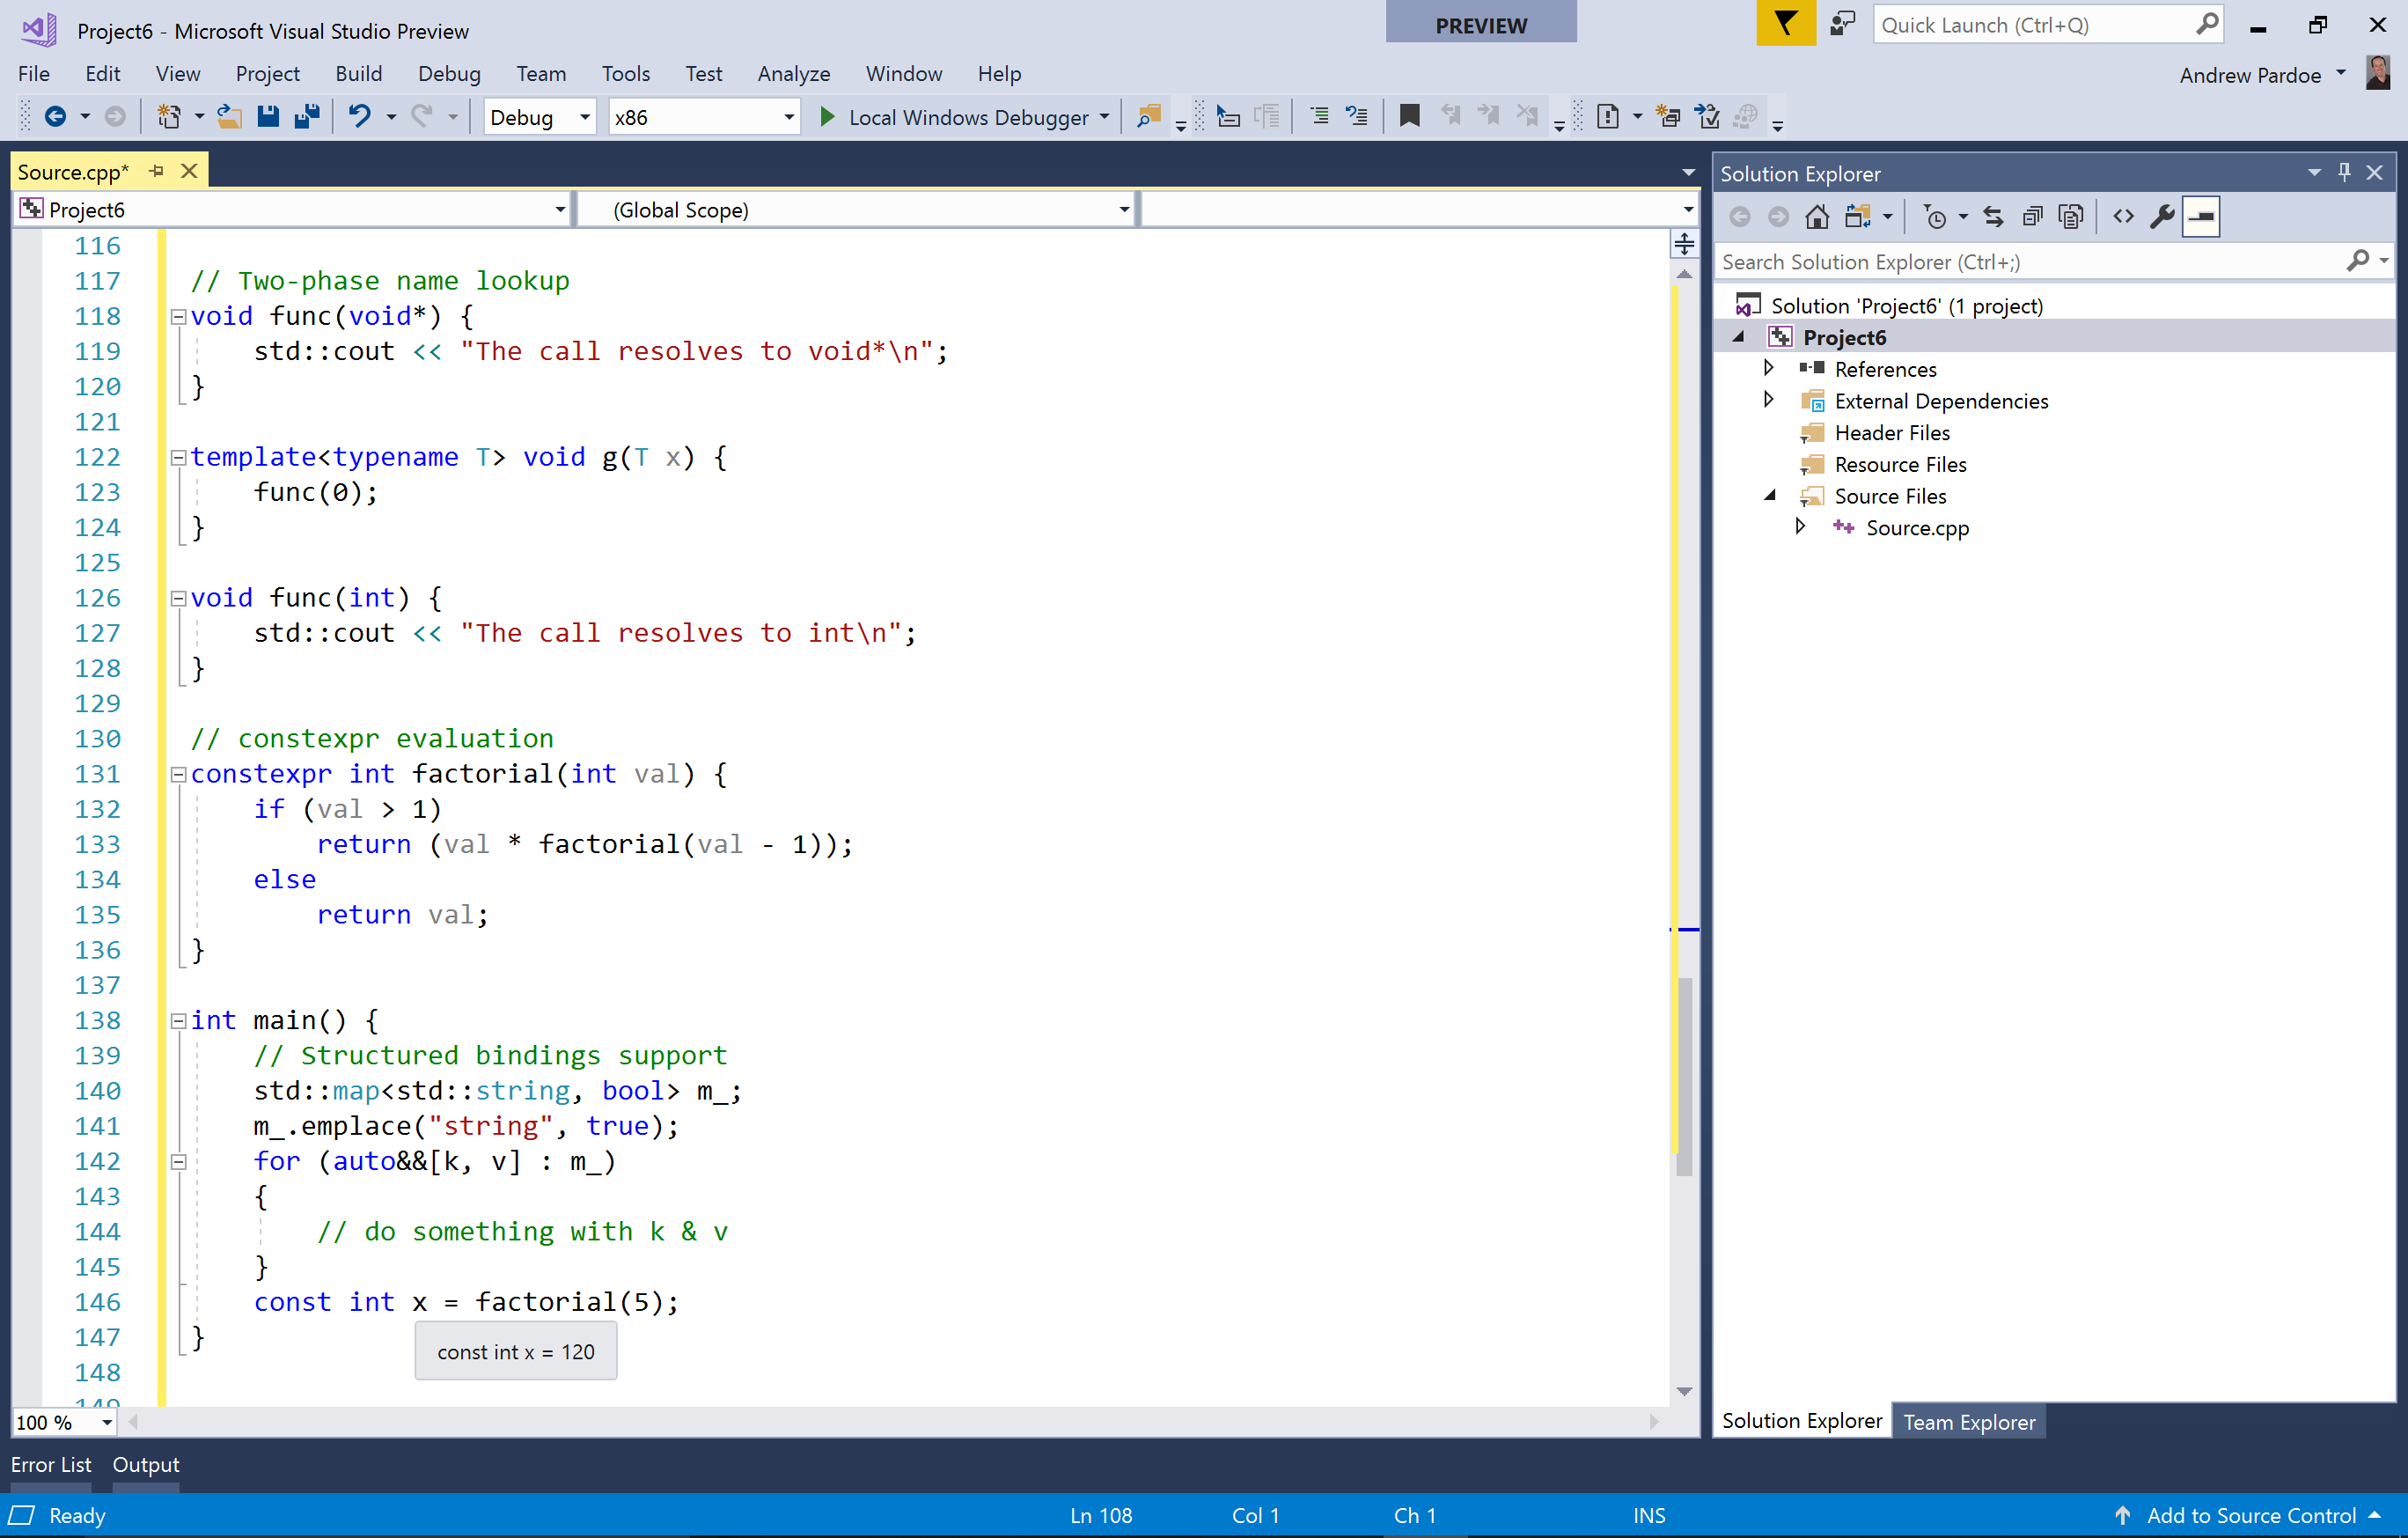 captura de tela do suporte para C++11, C++14 e muitos recursos do C++17